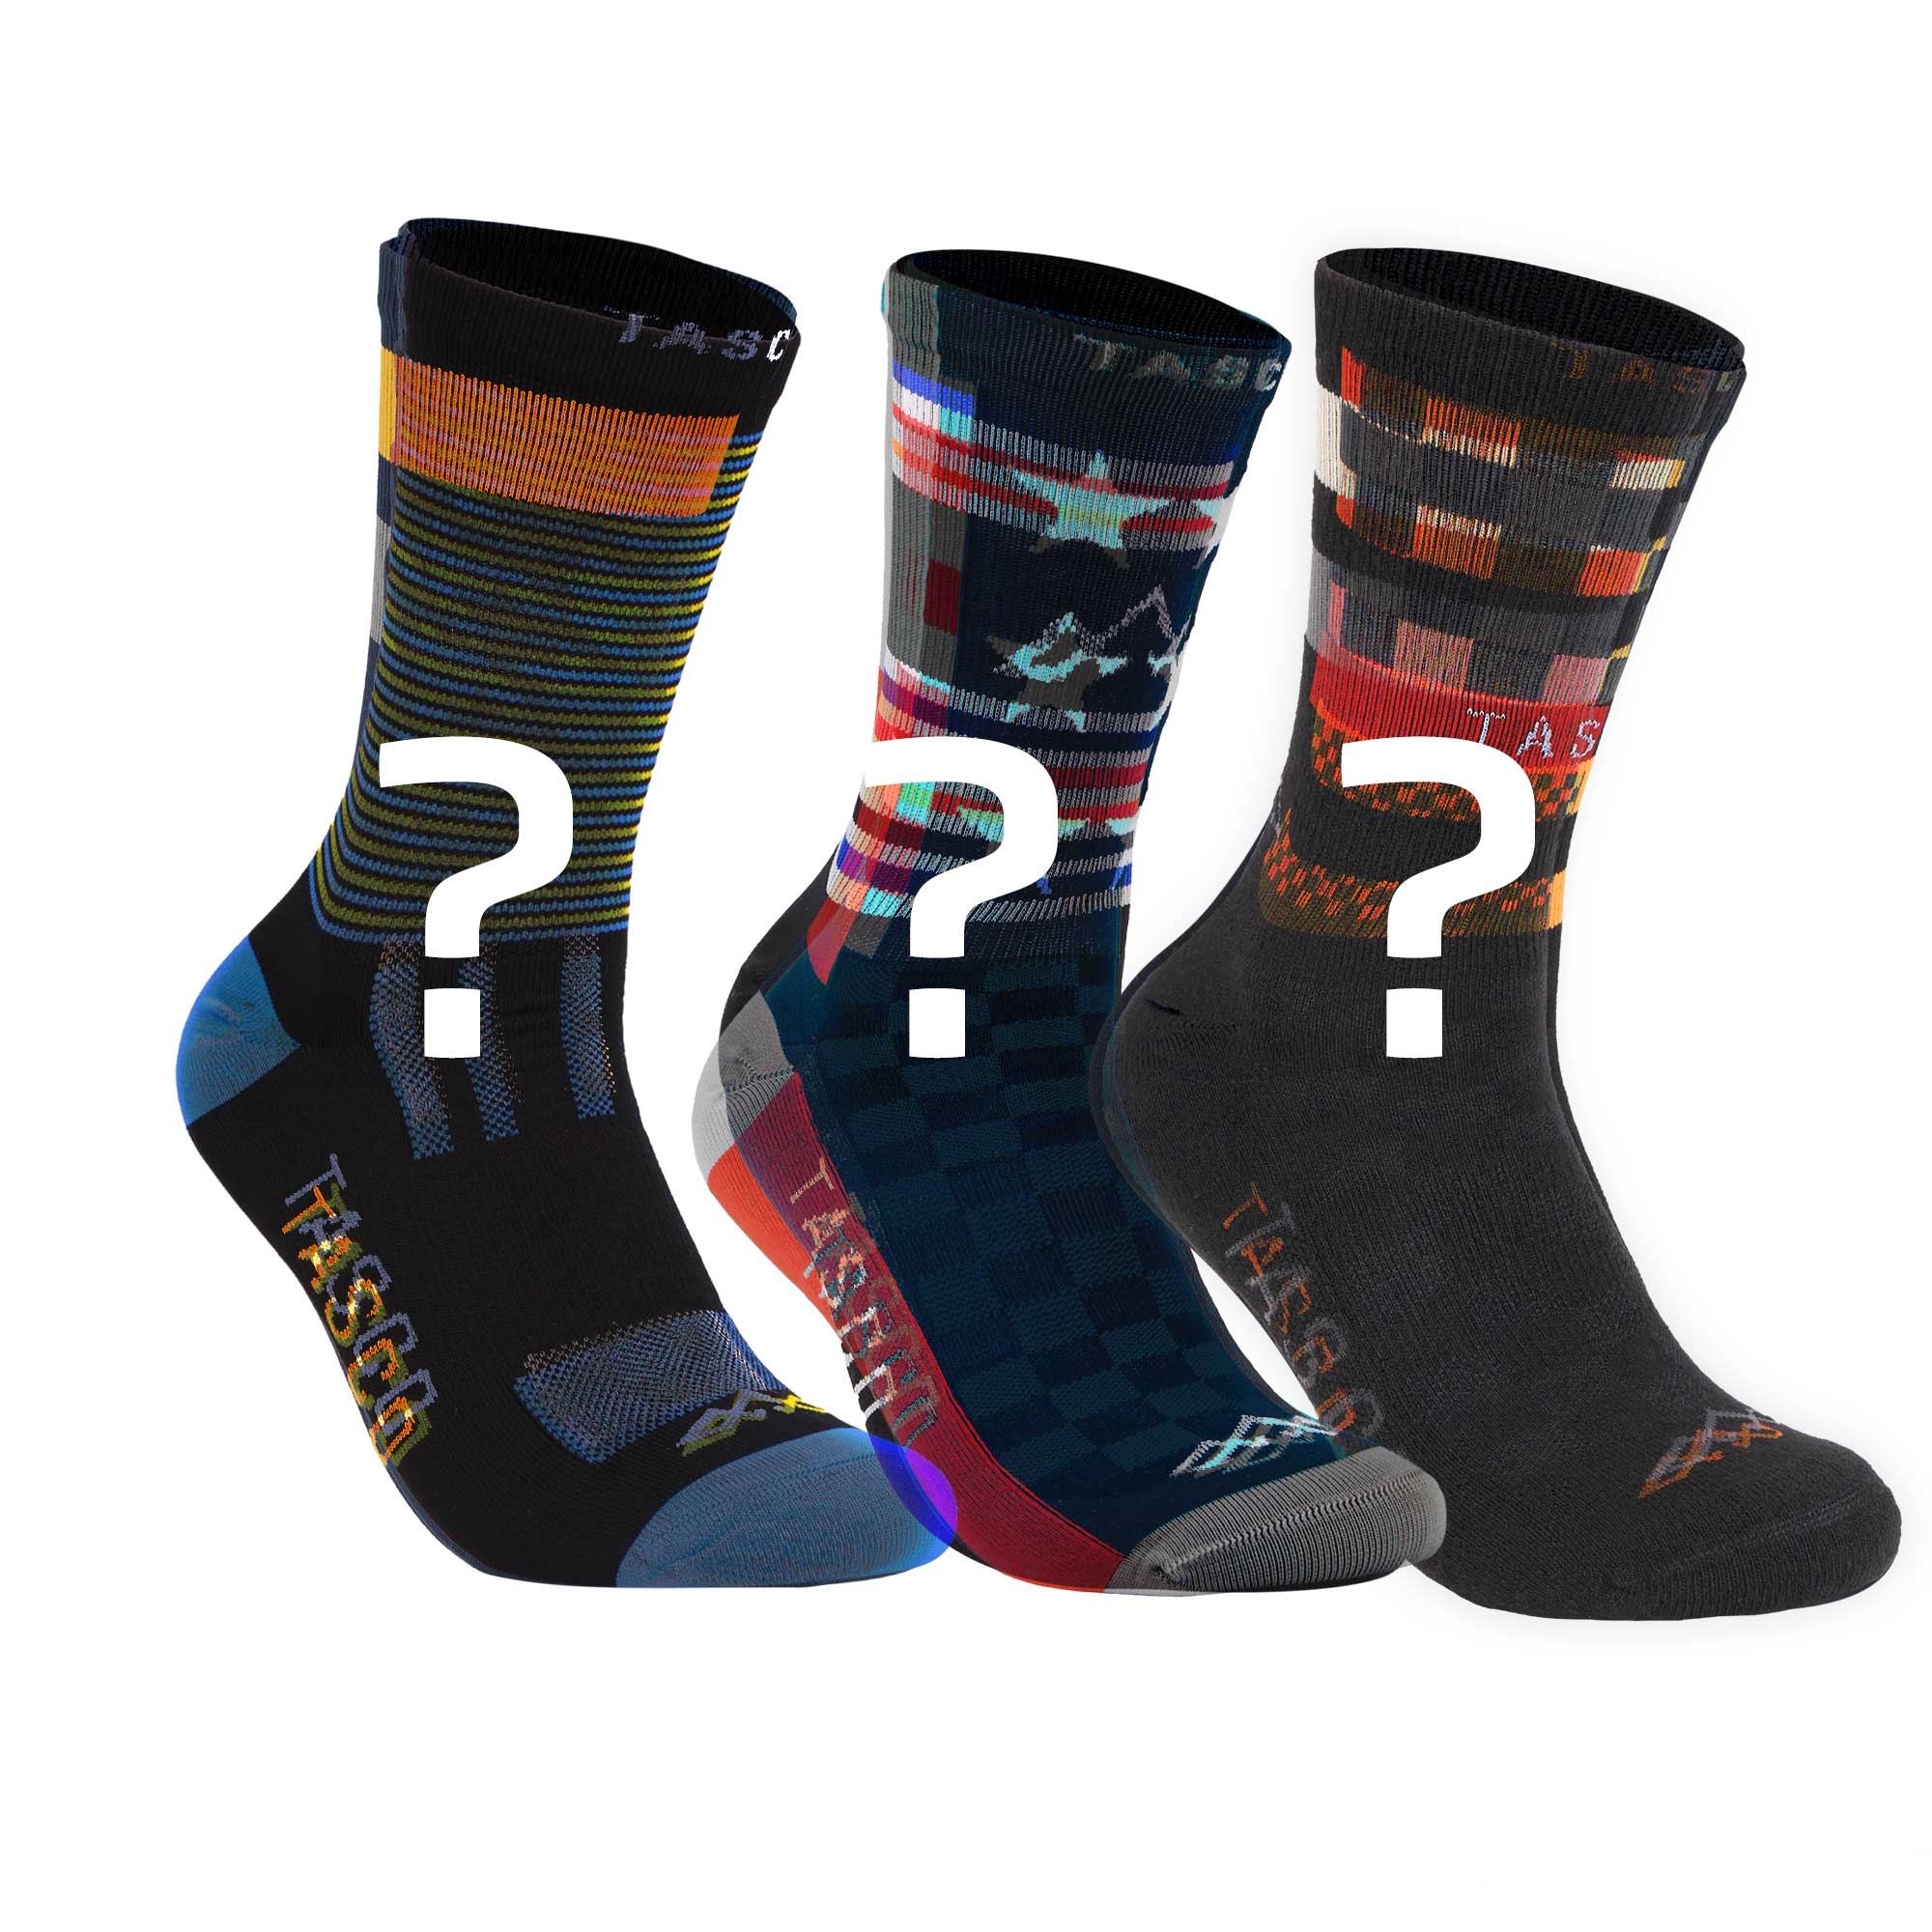 3 Pack of TASCO MTB Socks - Mystery Selection